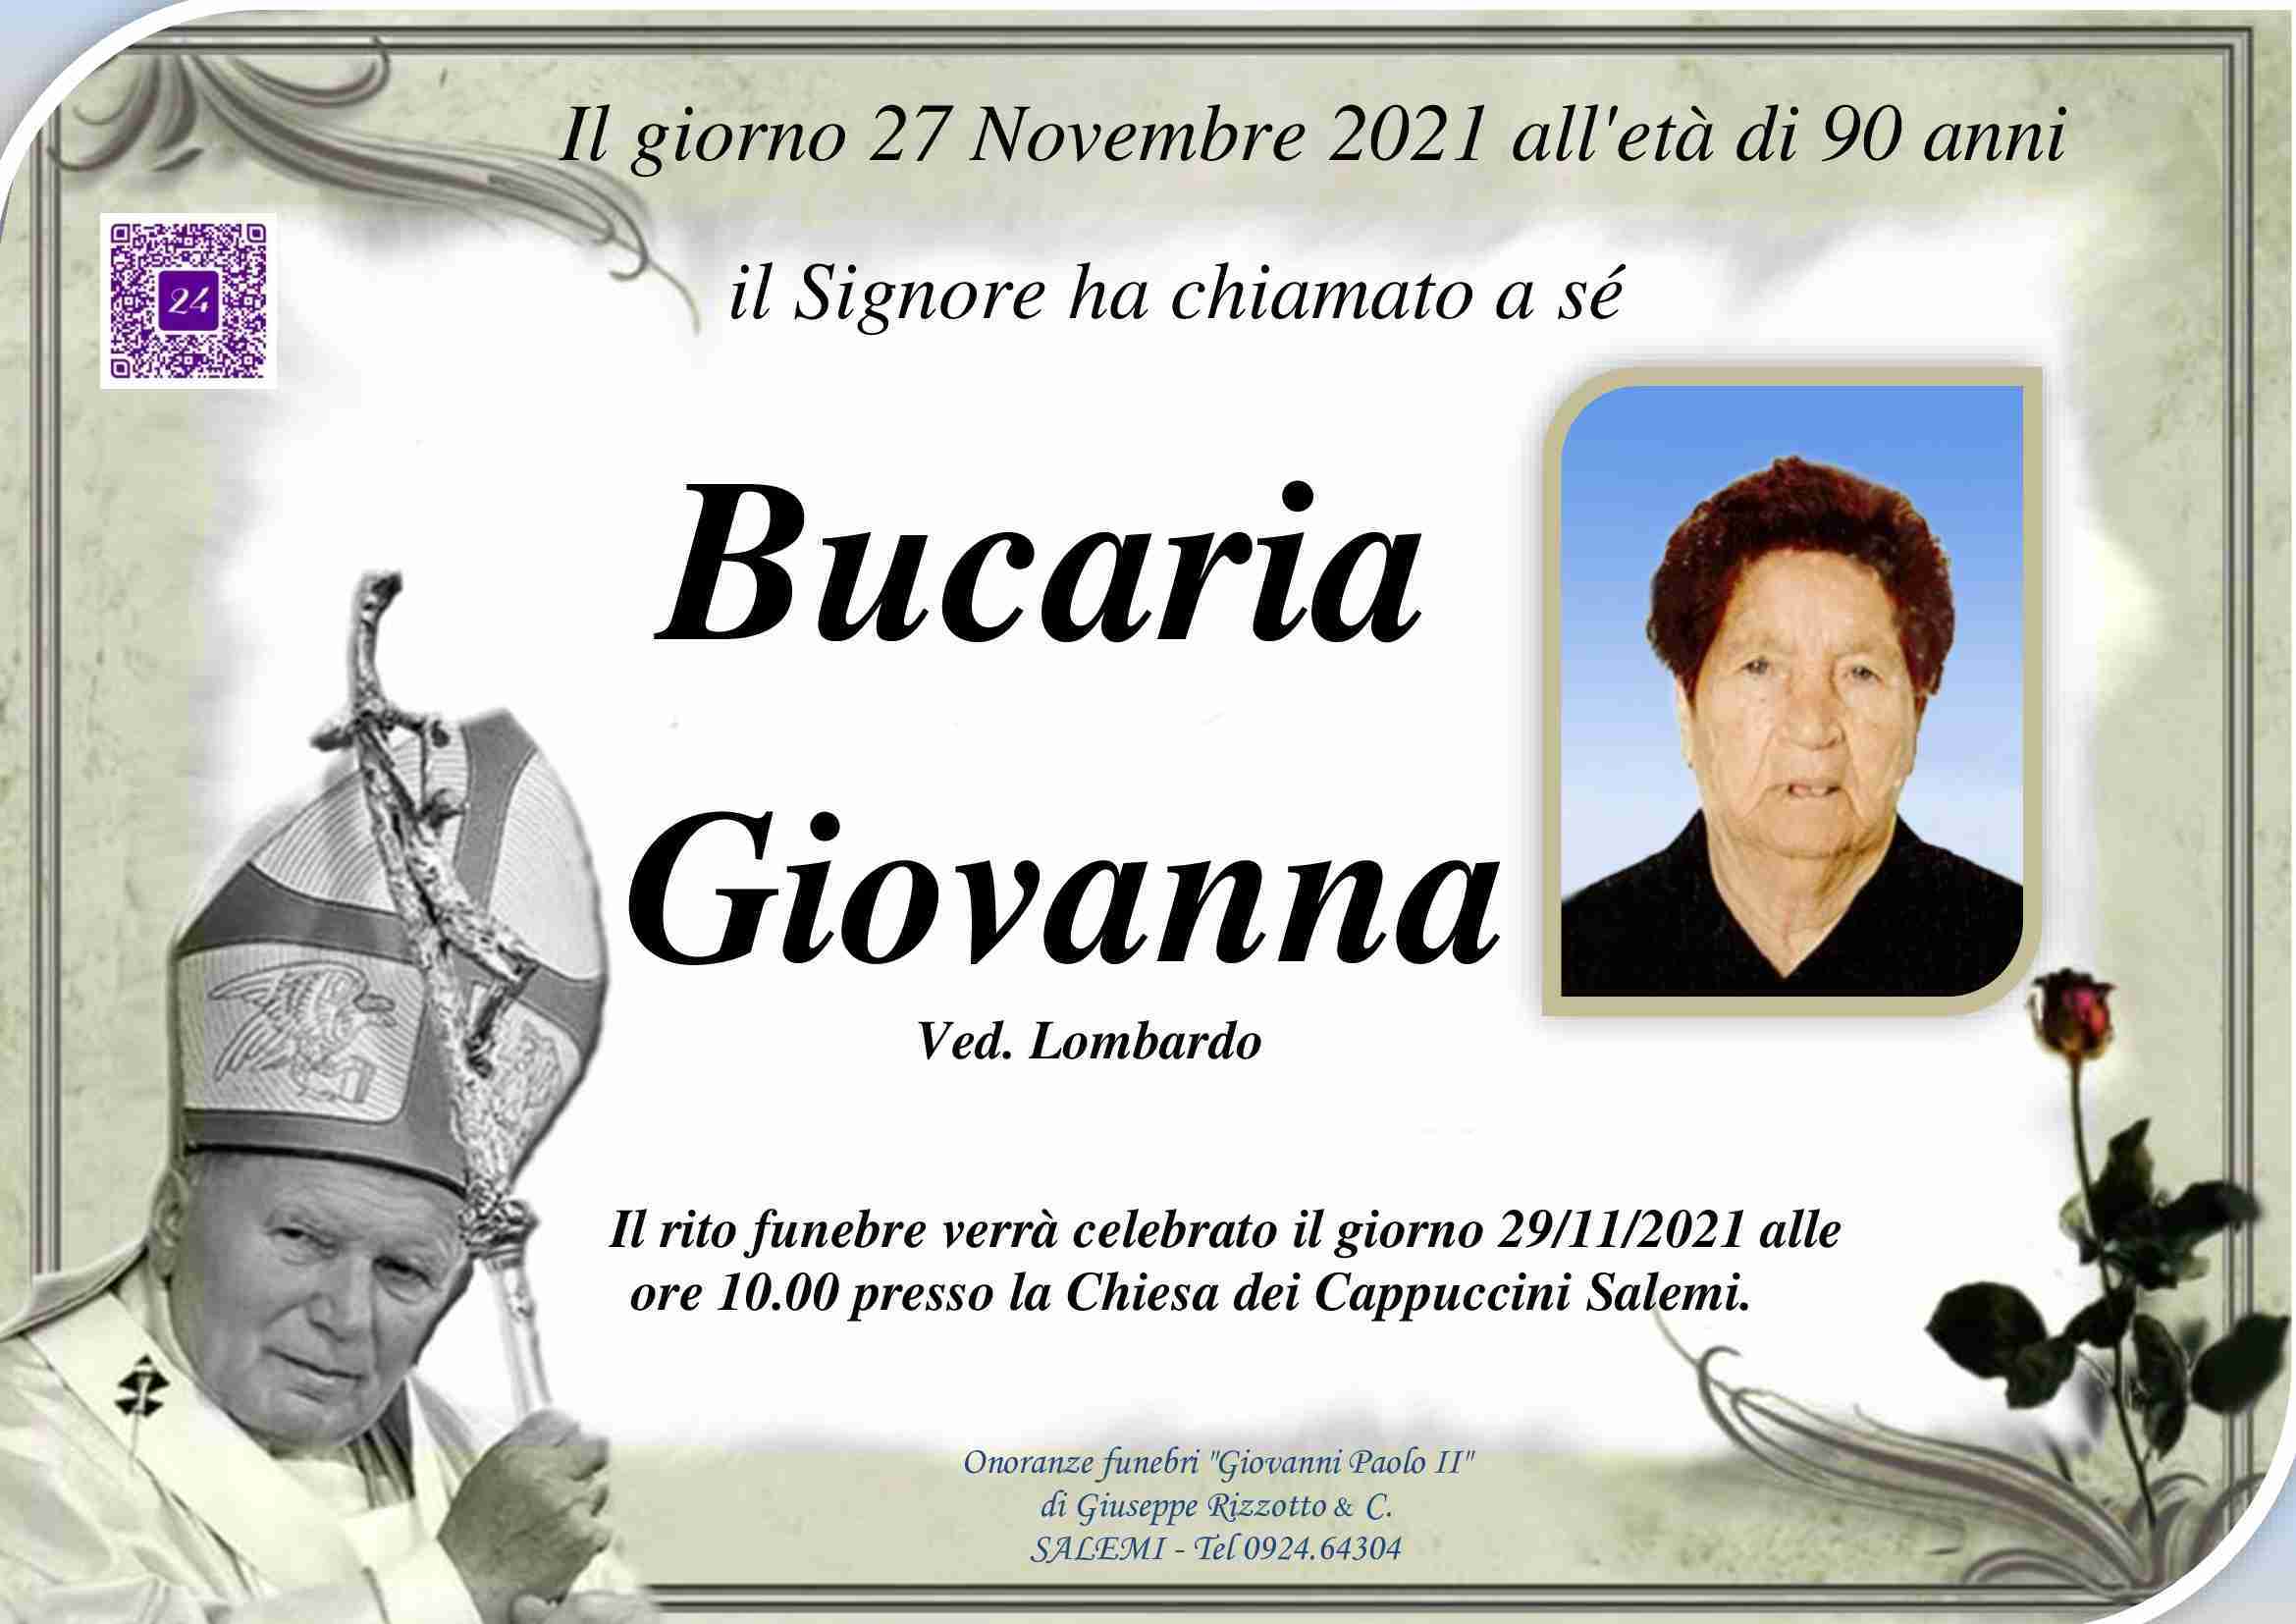 Giovanna Bucaria